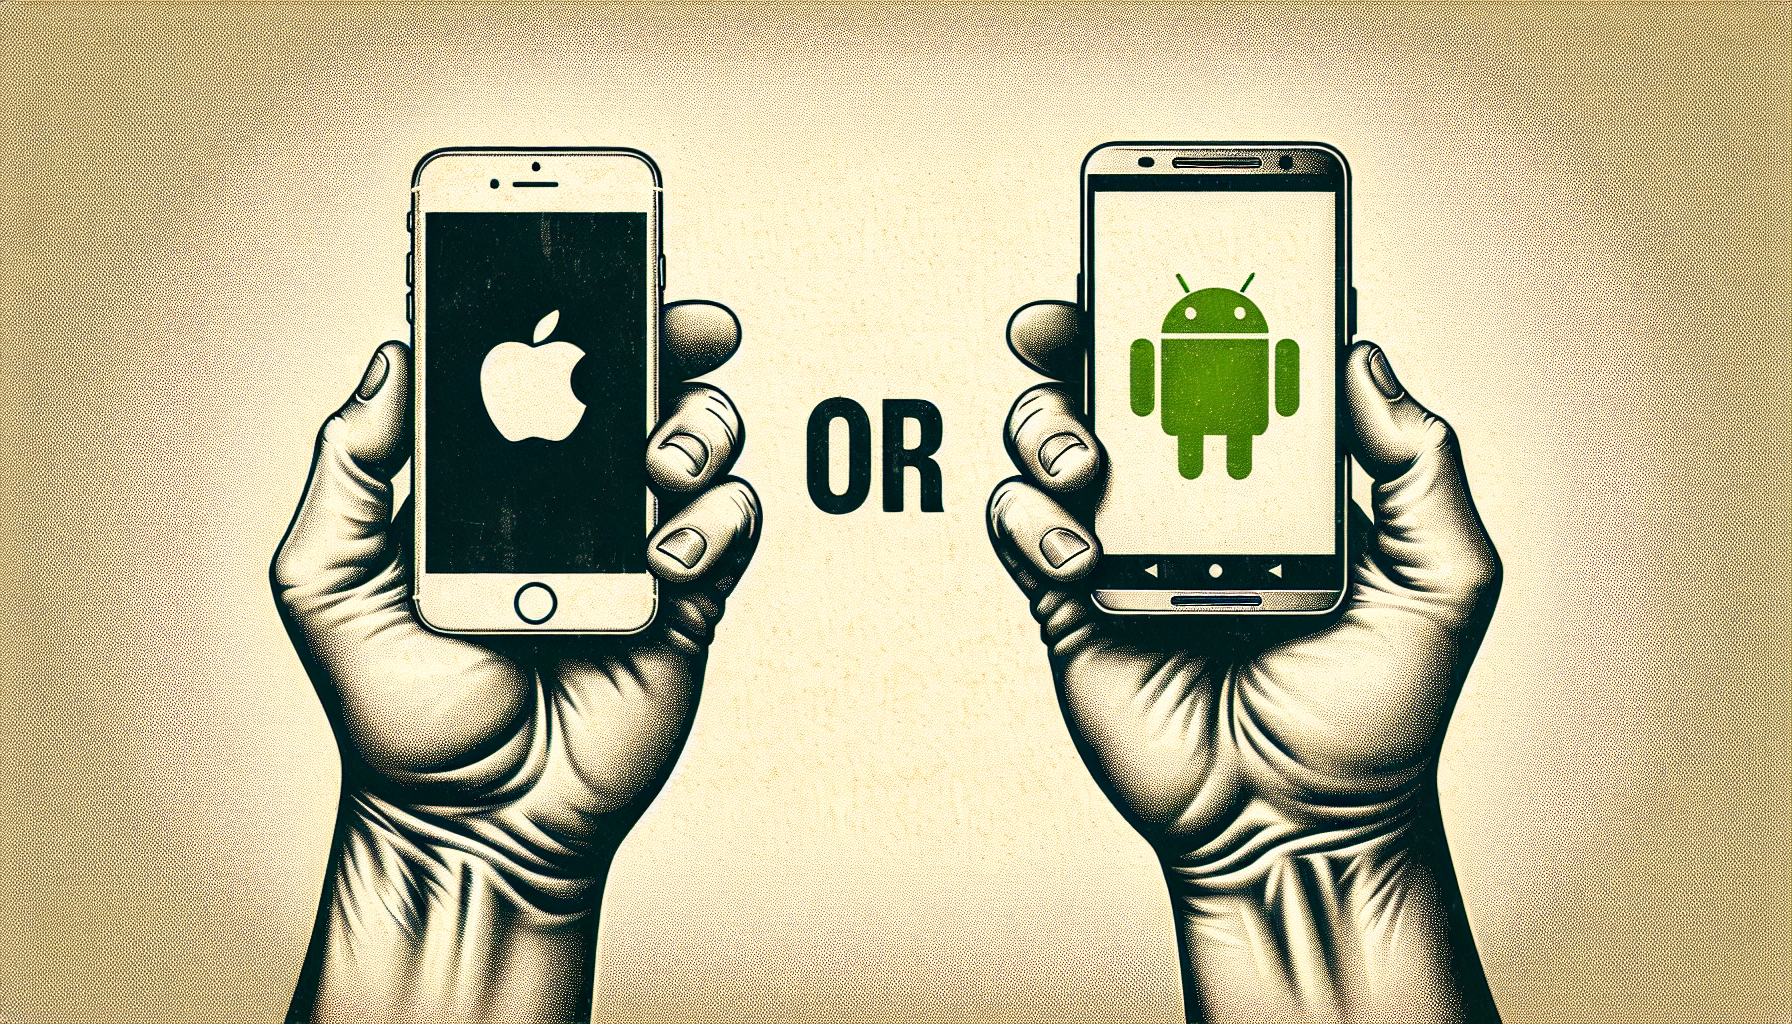 découvrez le comparatif entre iphone et smartphone android pour faire le meilleur choix selon vos besoins et préférences.